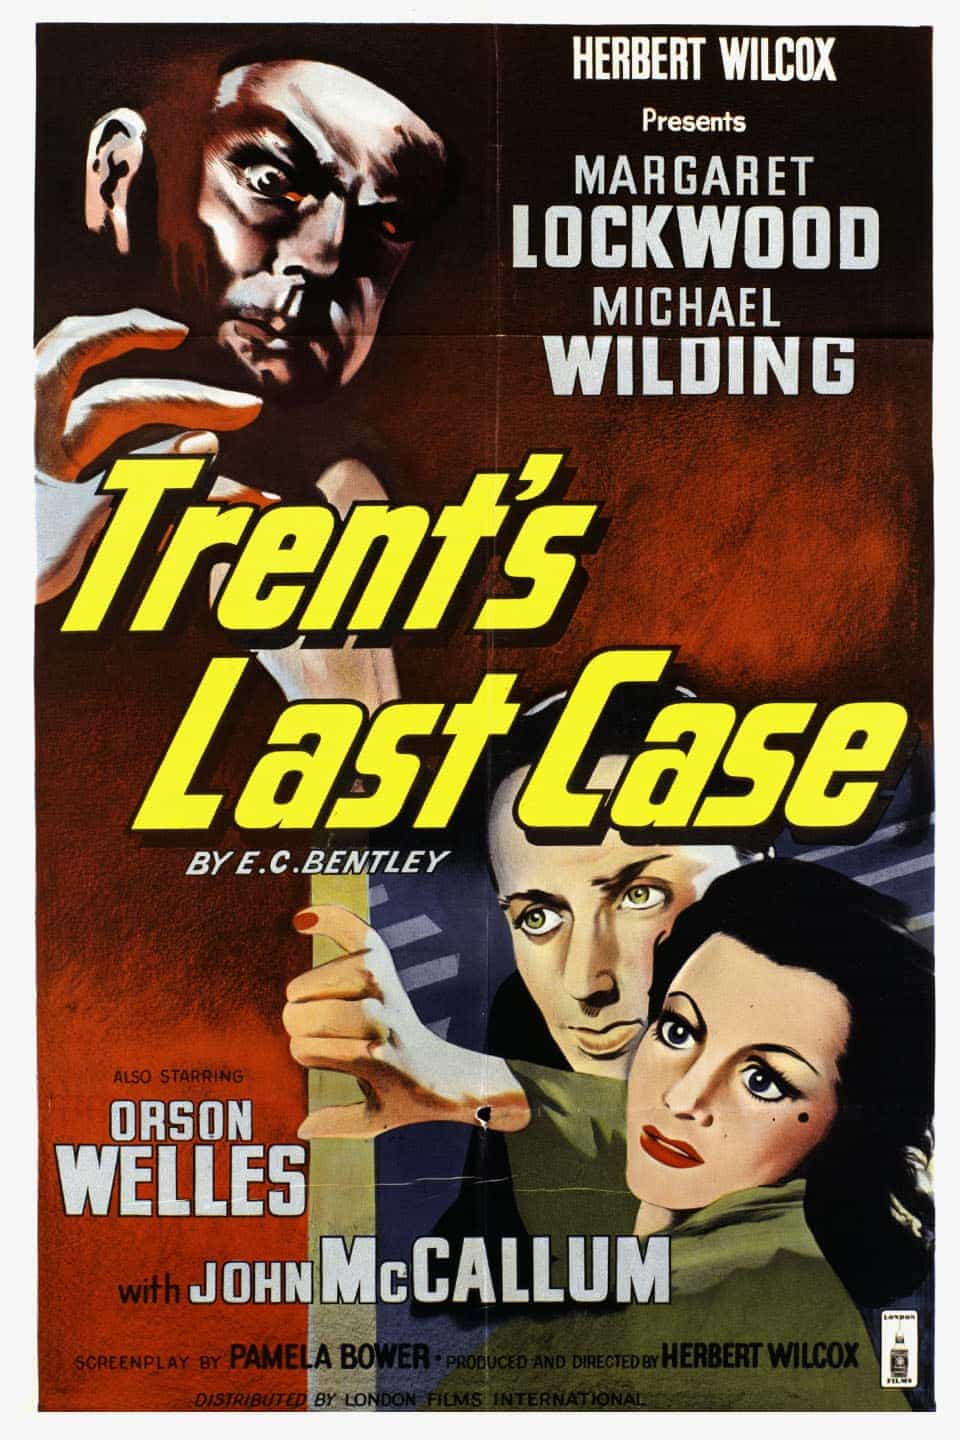 Trents Last Case